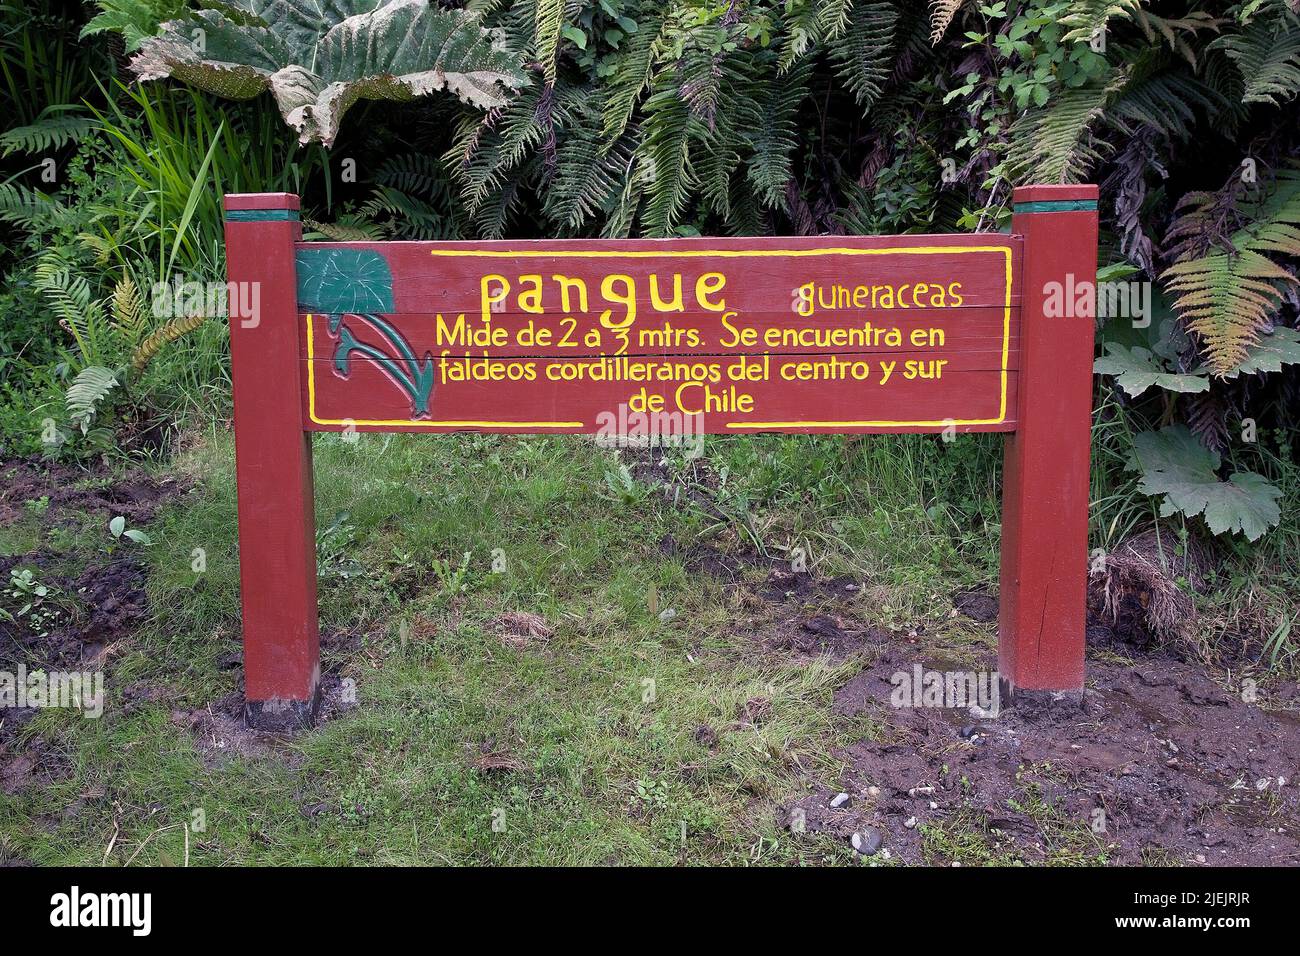 Pangue o Nalca (Gunnera tinctoria) nella località Peulla sul lago Todos Los Santos, Cile. È una specie vegetale originaria del Chil meridionale Foto Stock